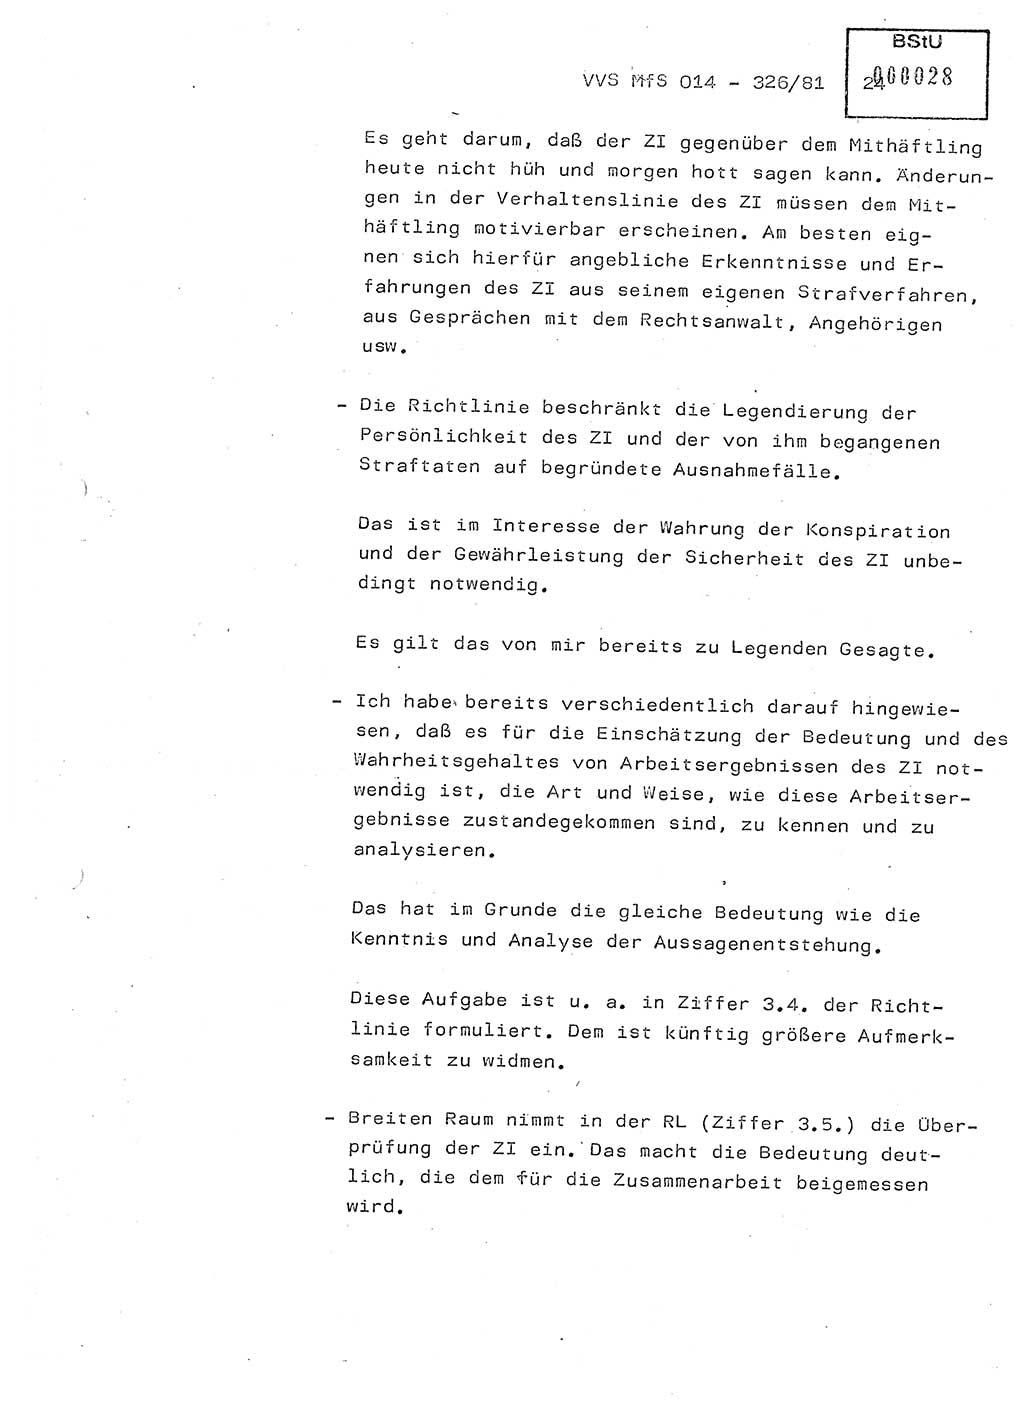 Thesen zum Einführungsvortrag für die Schulung zur Richtlinie Nr. 2/81 [zur Arbeit mit Zelleninformatoren (ZI)] des Genossen Minister (Generaloberst Erich Mielke), Ministerium für Staatssicherheit (MfS) [Deutsche Demokratische Republik (DDR)], Hauptabteilung (HA) Ⅸ, Vertrauliche Verschlußsache (VVS) 014-326/81, Berlin 1981, Seite 24 (Th. Sch. RL 2/81 MfS DDR HA Ⅸ VVS 014-326/81 1981, S. 24)